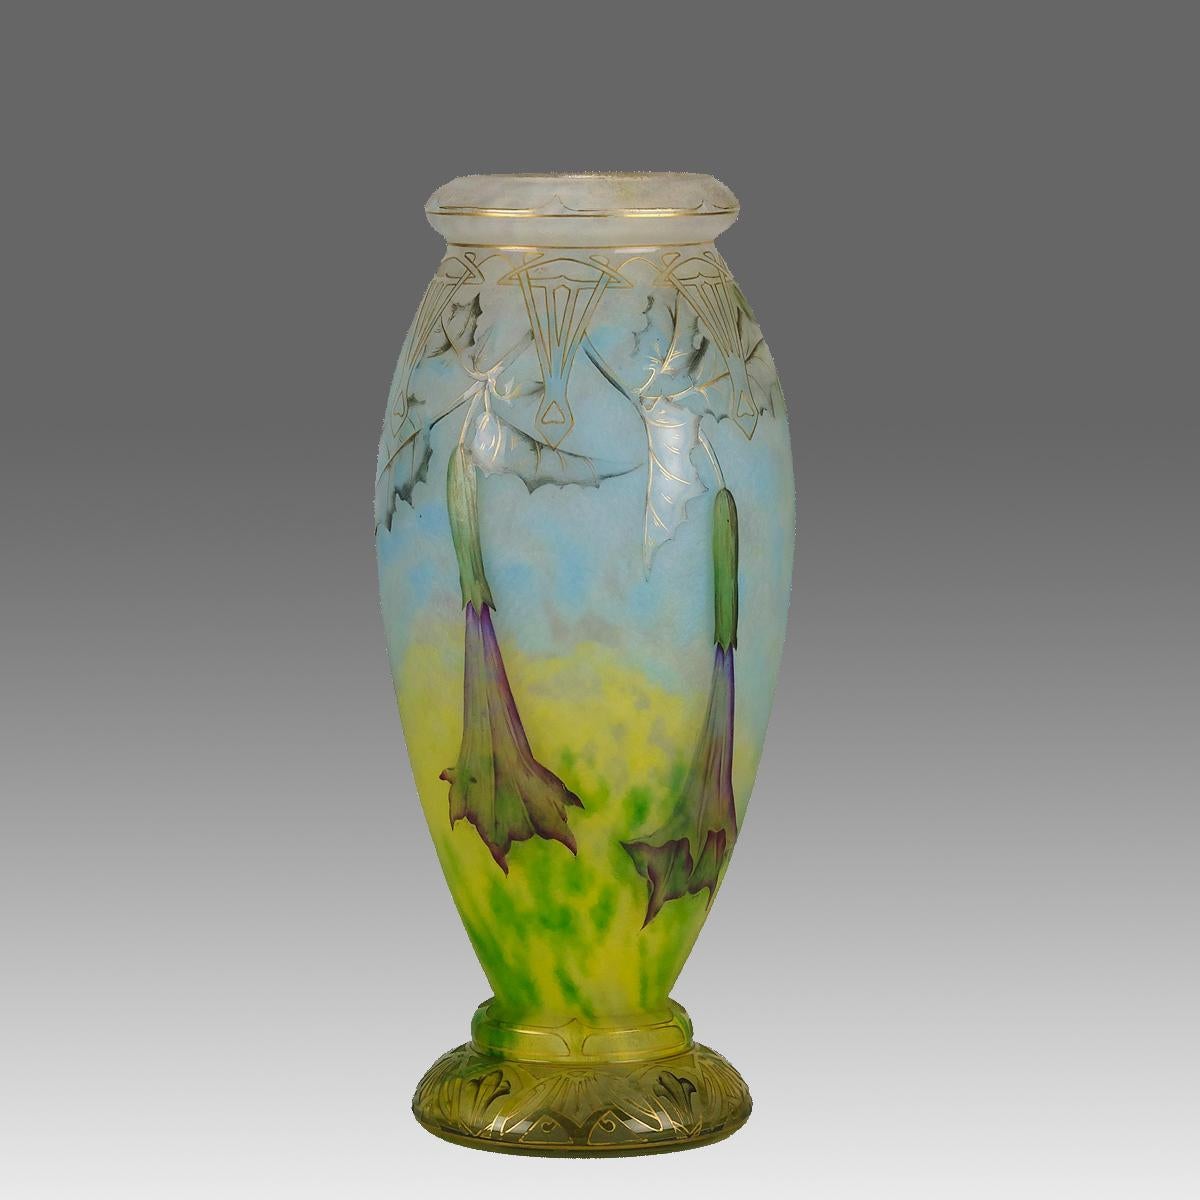 Eine prächtige Jugendstil-Kamee-Glasvase aus dem frühen 20. Jahrhundert, geätzt und emailliert mit blühendem Stechapfel in einer lebendigen Landschaft. Das Design wird durch ein vergoldetes Muster auf der Oberfläche hervorgehoben, um eine